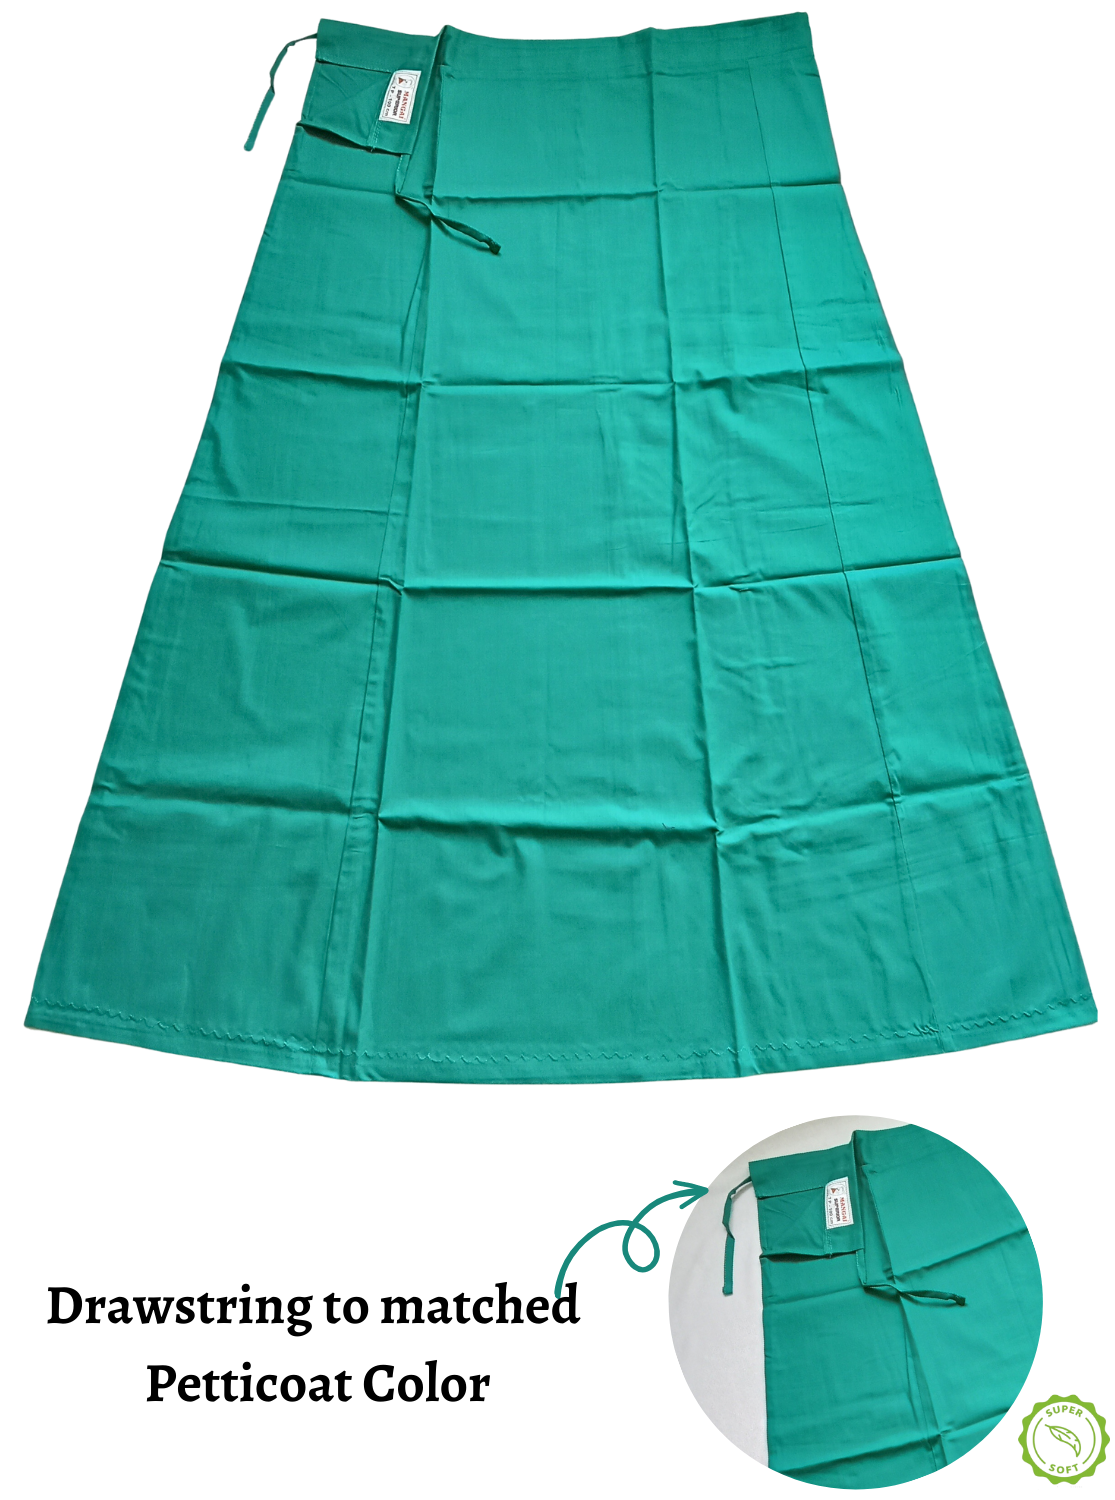 MANGAI Embroidery Superior Cotton Petticoats - 8 Part | Multicolor Premium Cotton Petticoat's